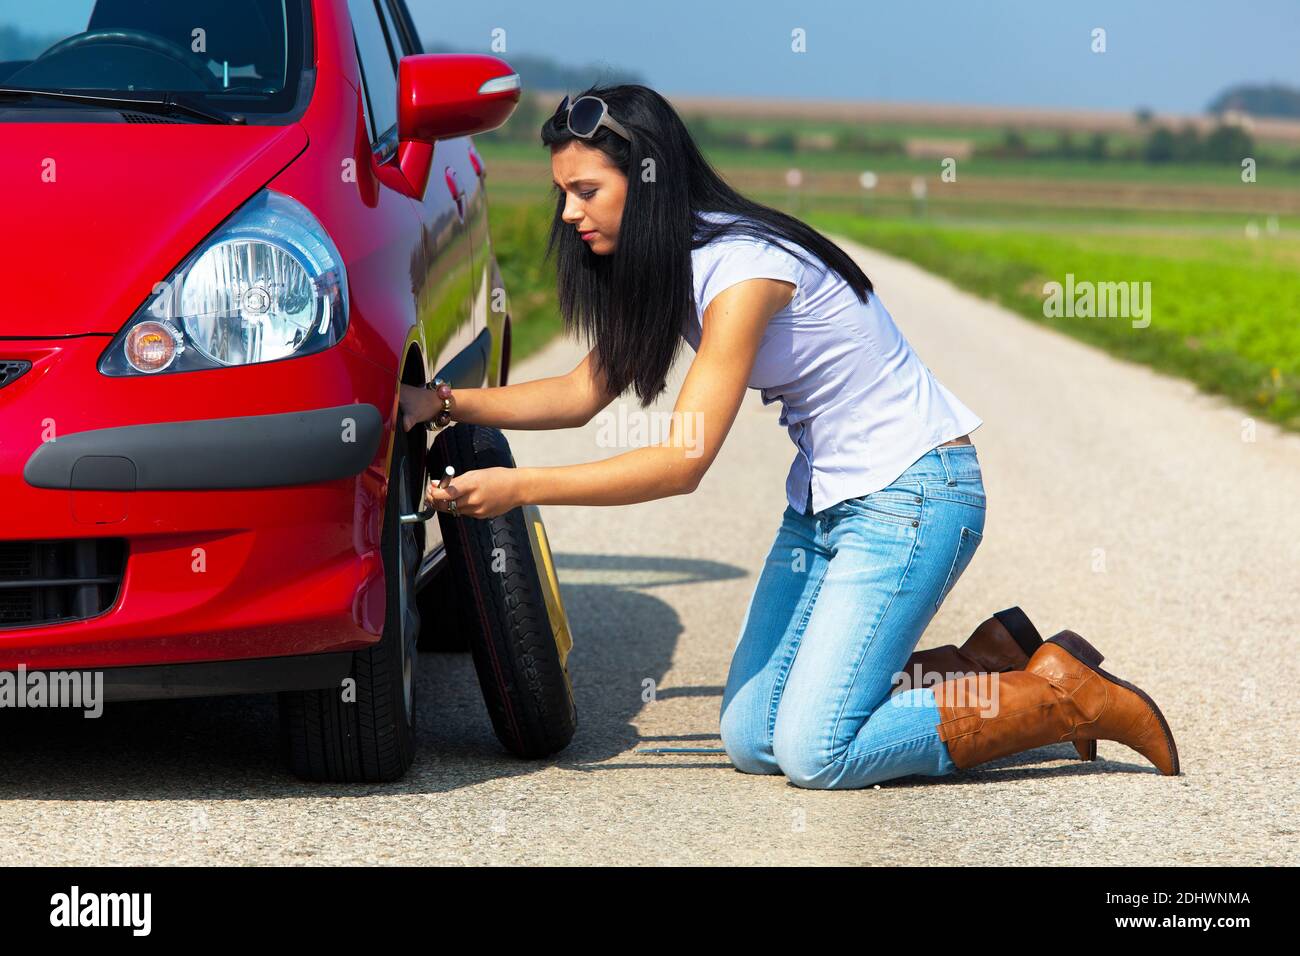 Junge Frau mit einer Reifenpanne am Auto Banque D'Images